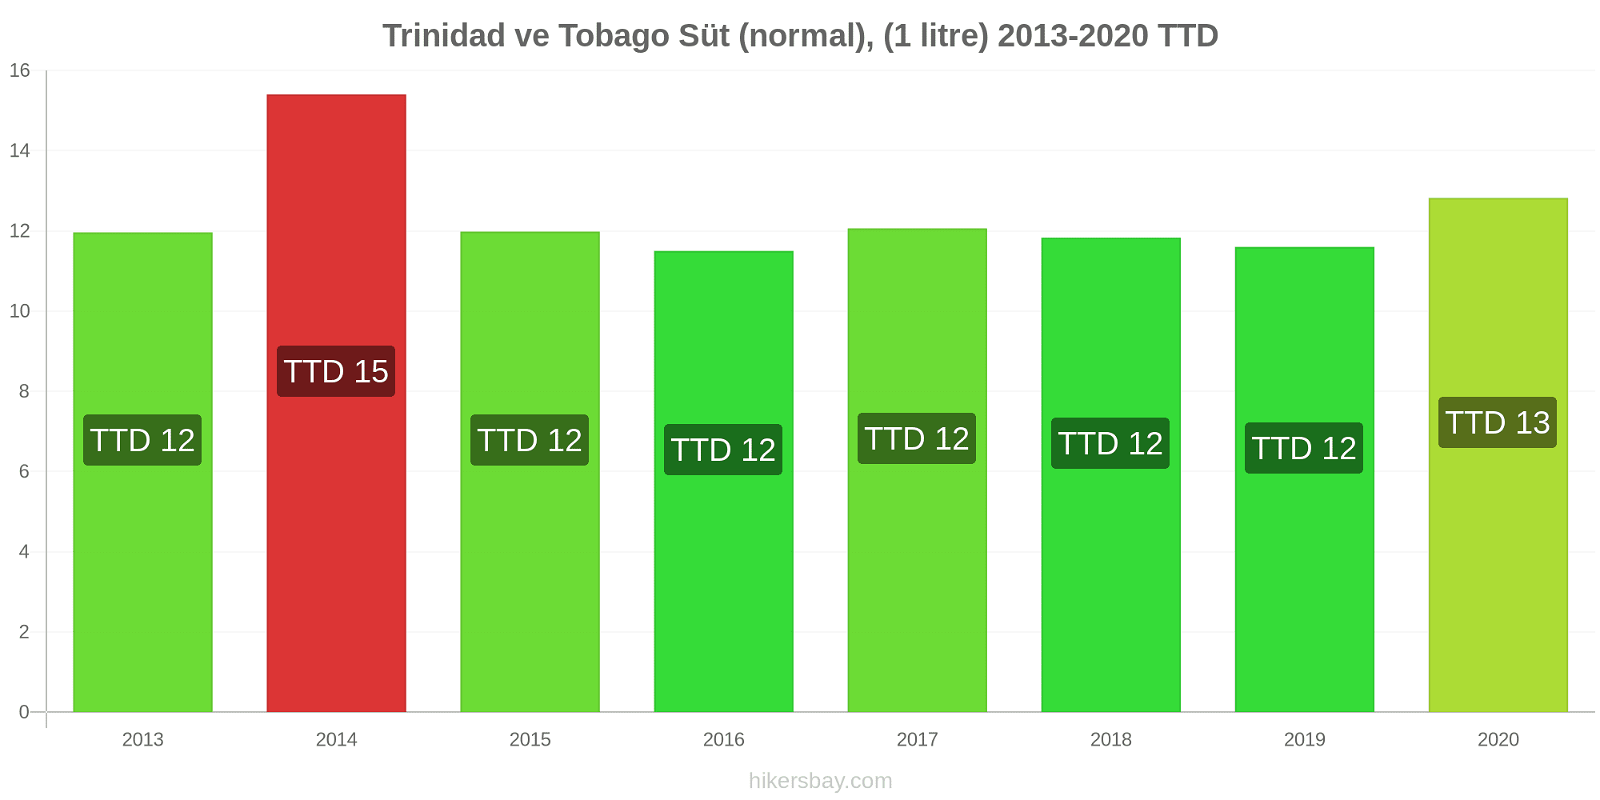 Trinidad ve Tobago fiyat değişiklikleri Süt (normal), (1 litre) hikersbay.com